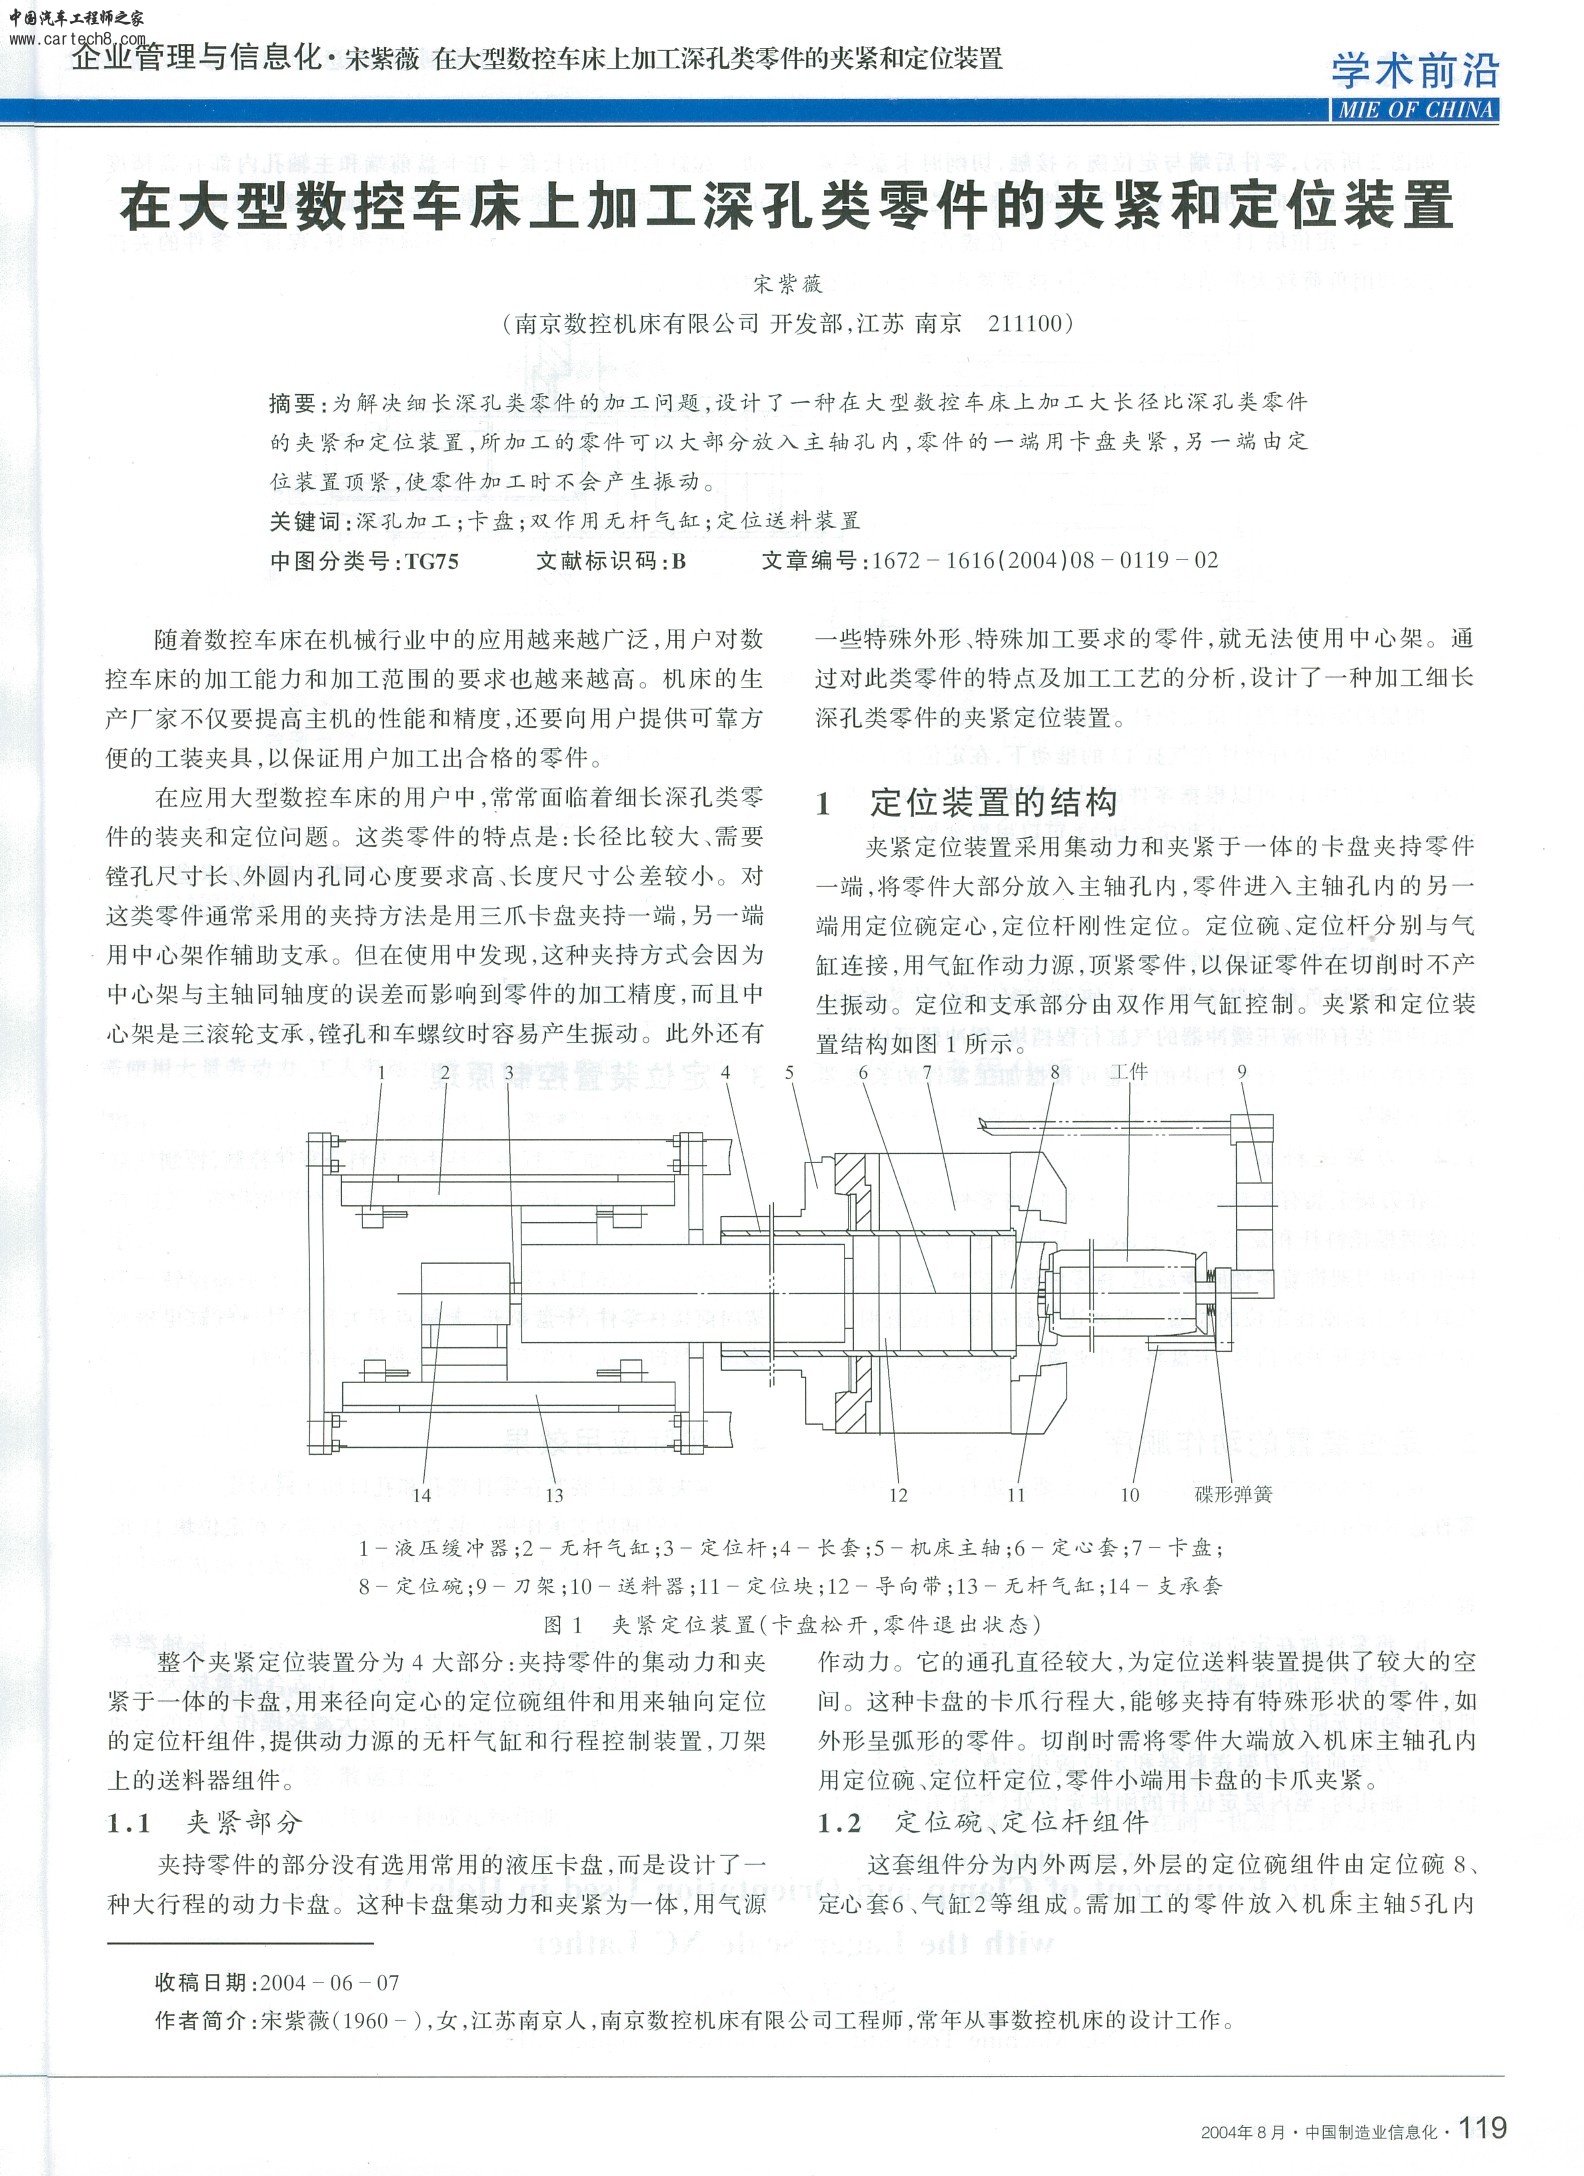 《在大型数控车床上加工深孔类零件的夹紧和定位装置》宋紫薇 中国制造业信息化 2004.JPG